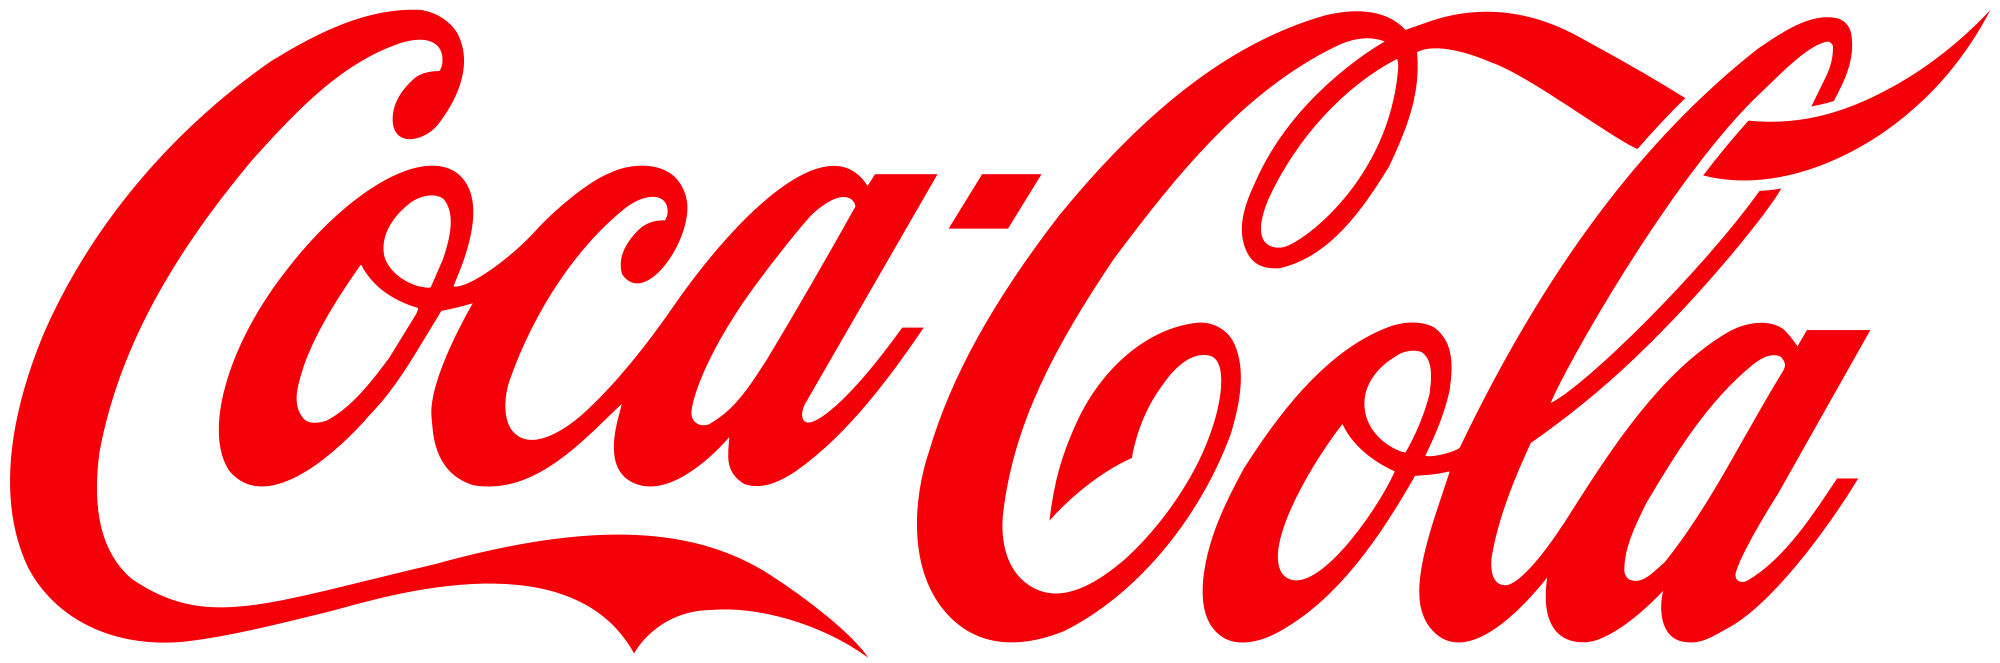 Akron Cocacola Bottling Co Slide Image